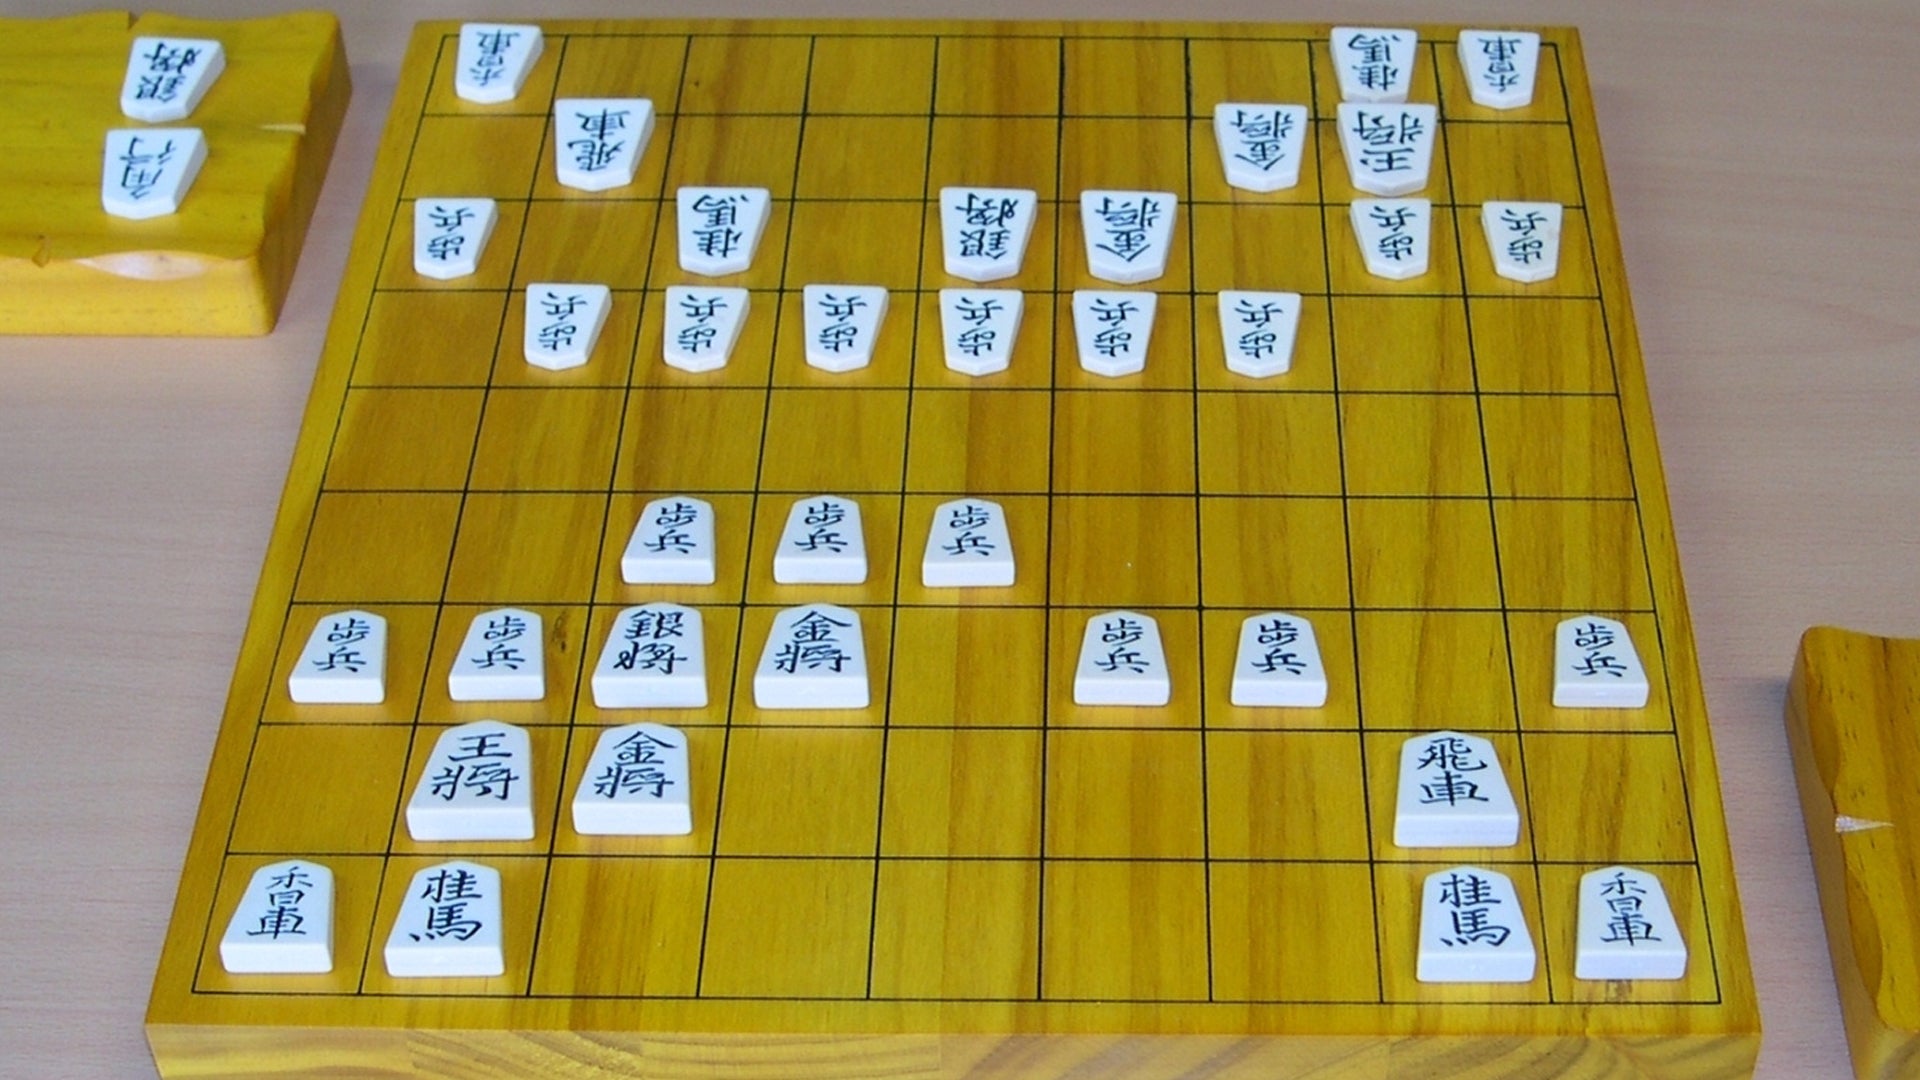 Shogi board with pieces